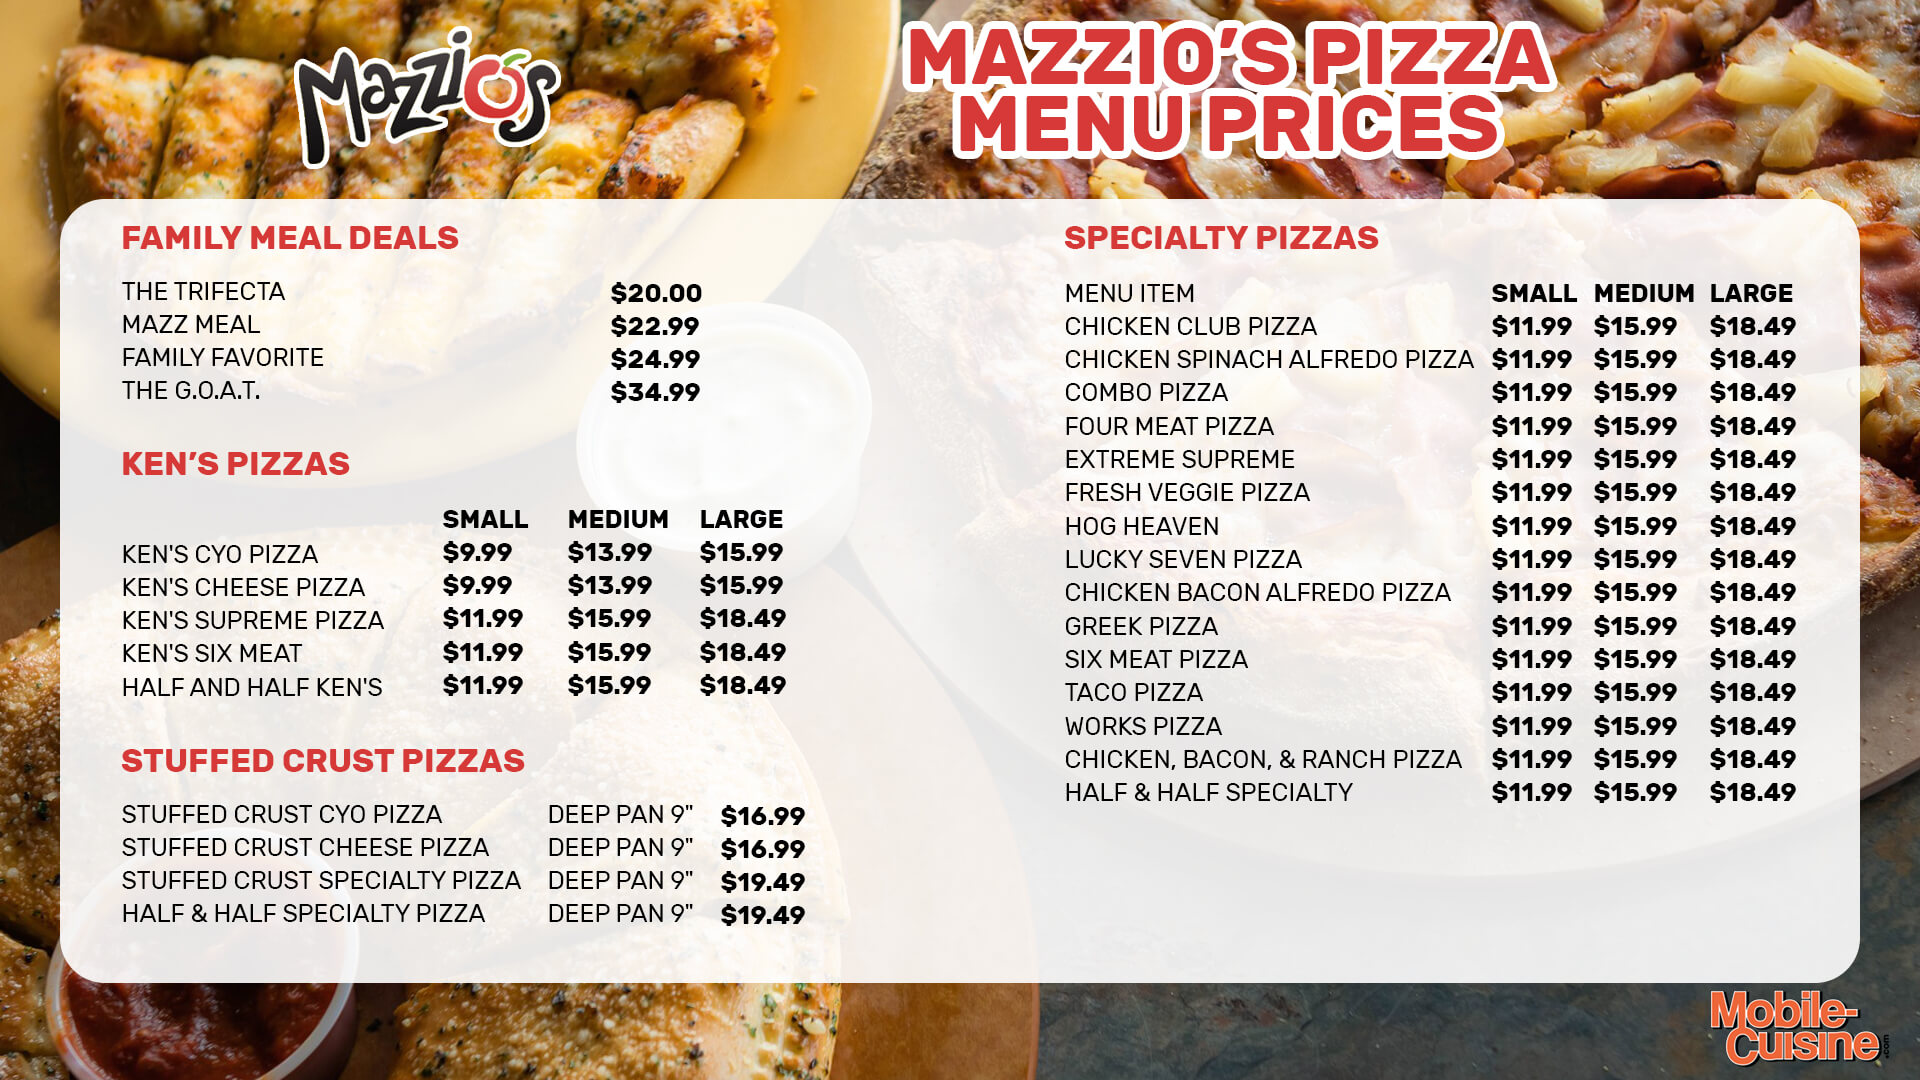 Mazzio’s-Pizza-menu-prices